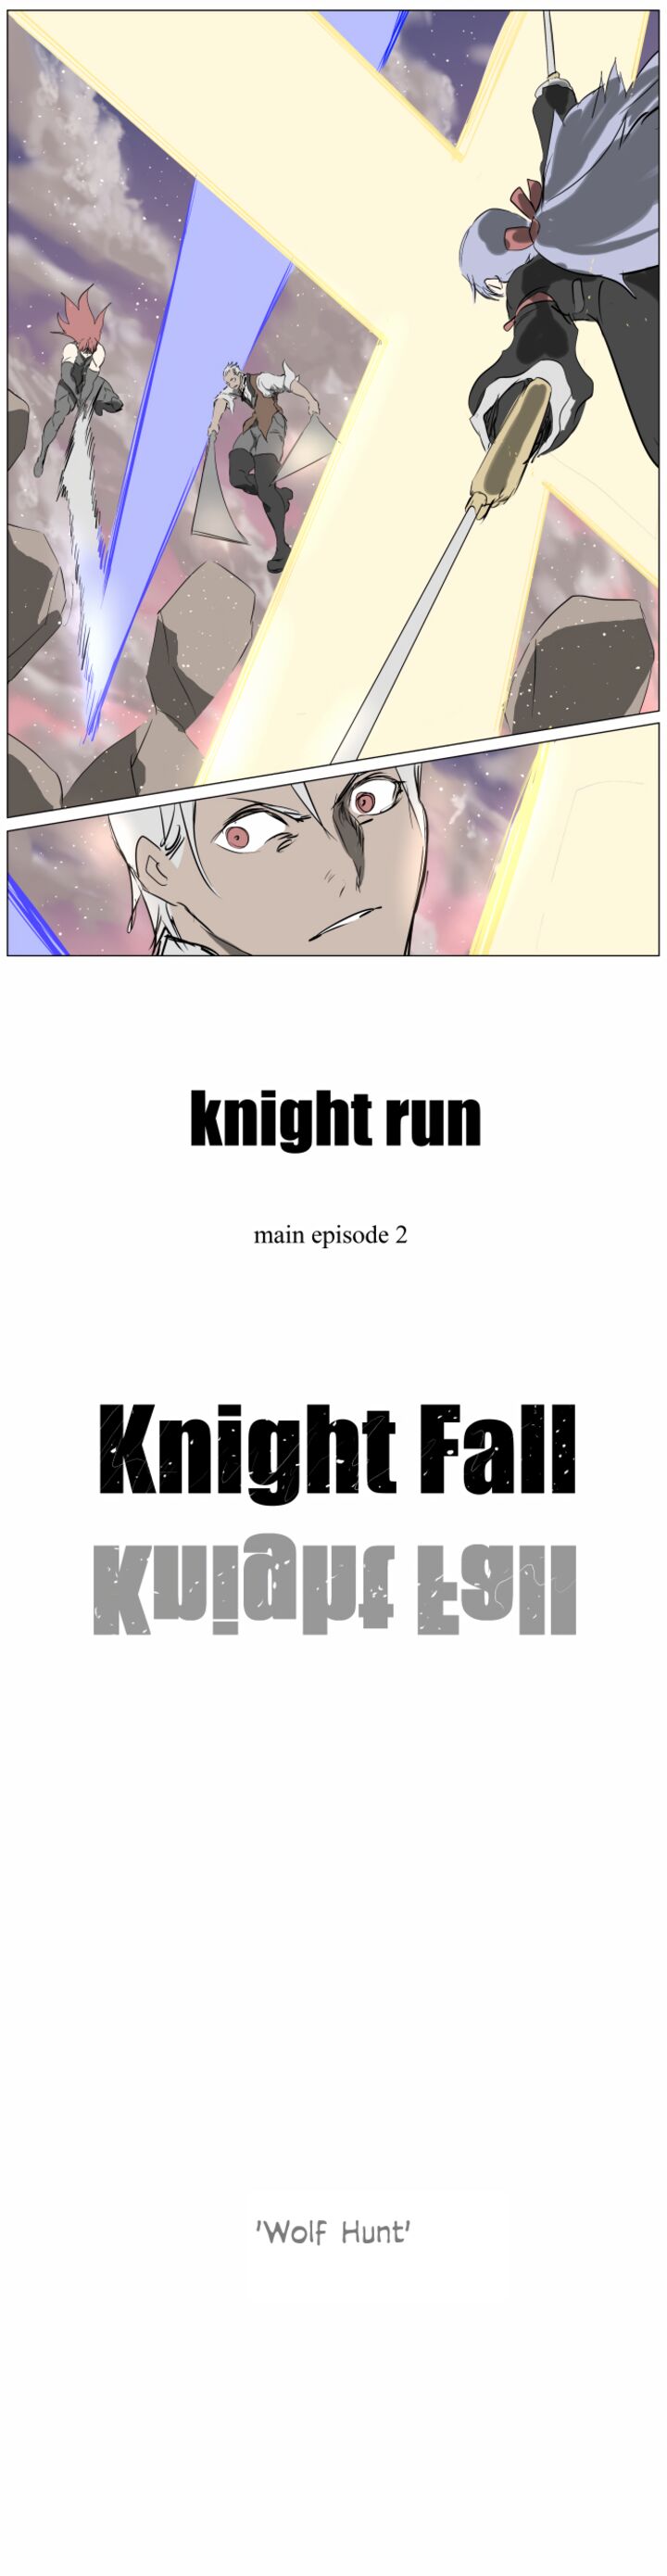 knight_run_257_16